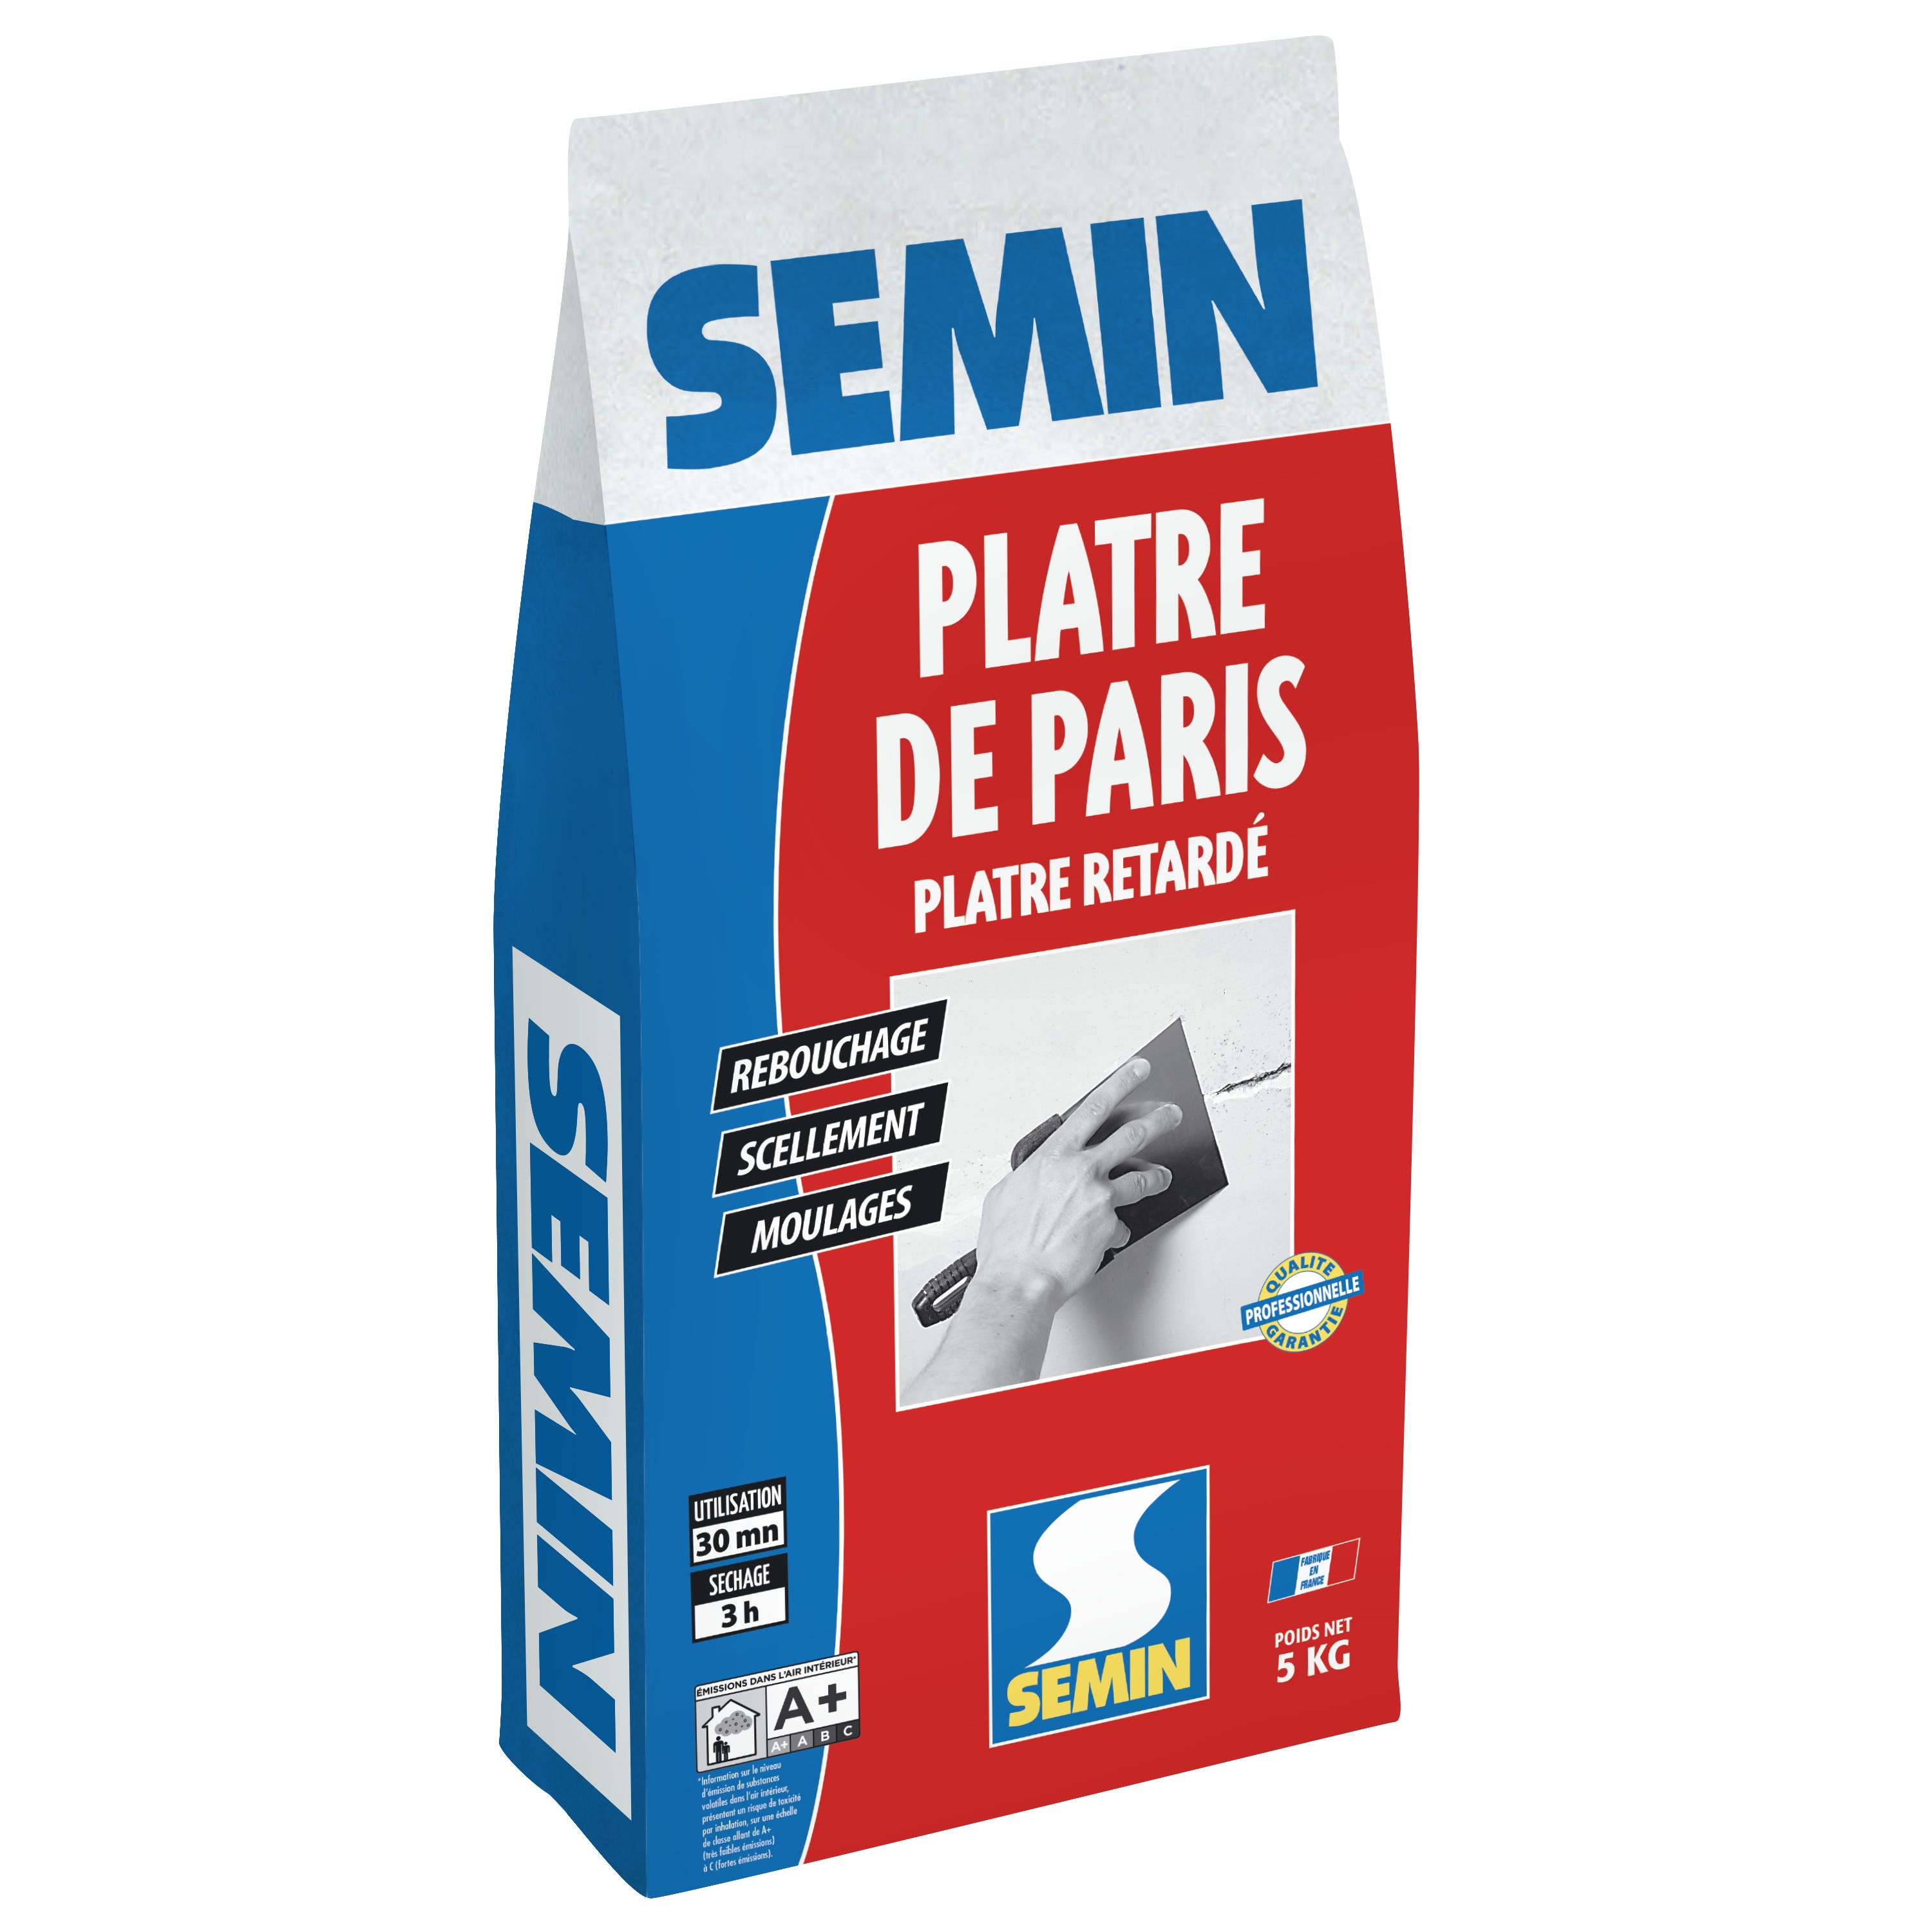 SEMIN Plâtre de Paris 5kg - SEMIN - - 72300175Générique